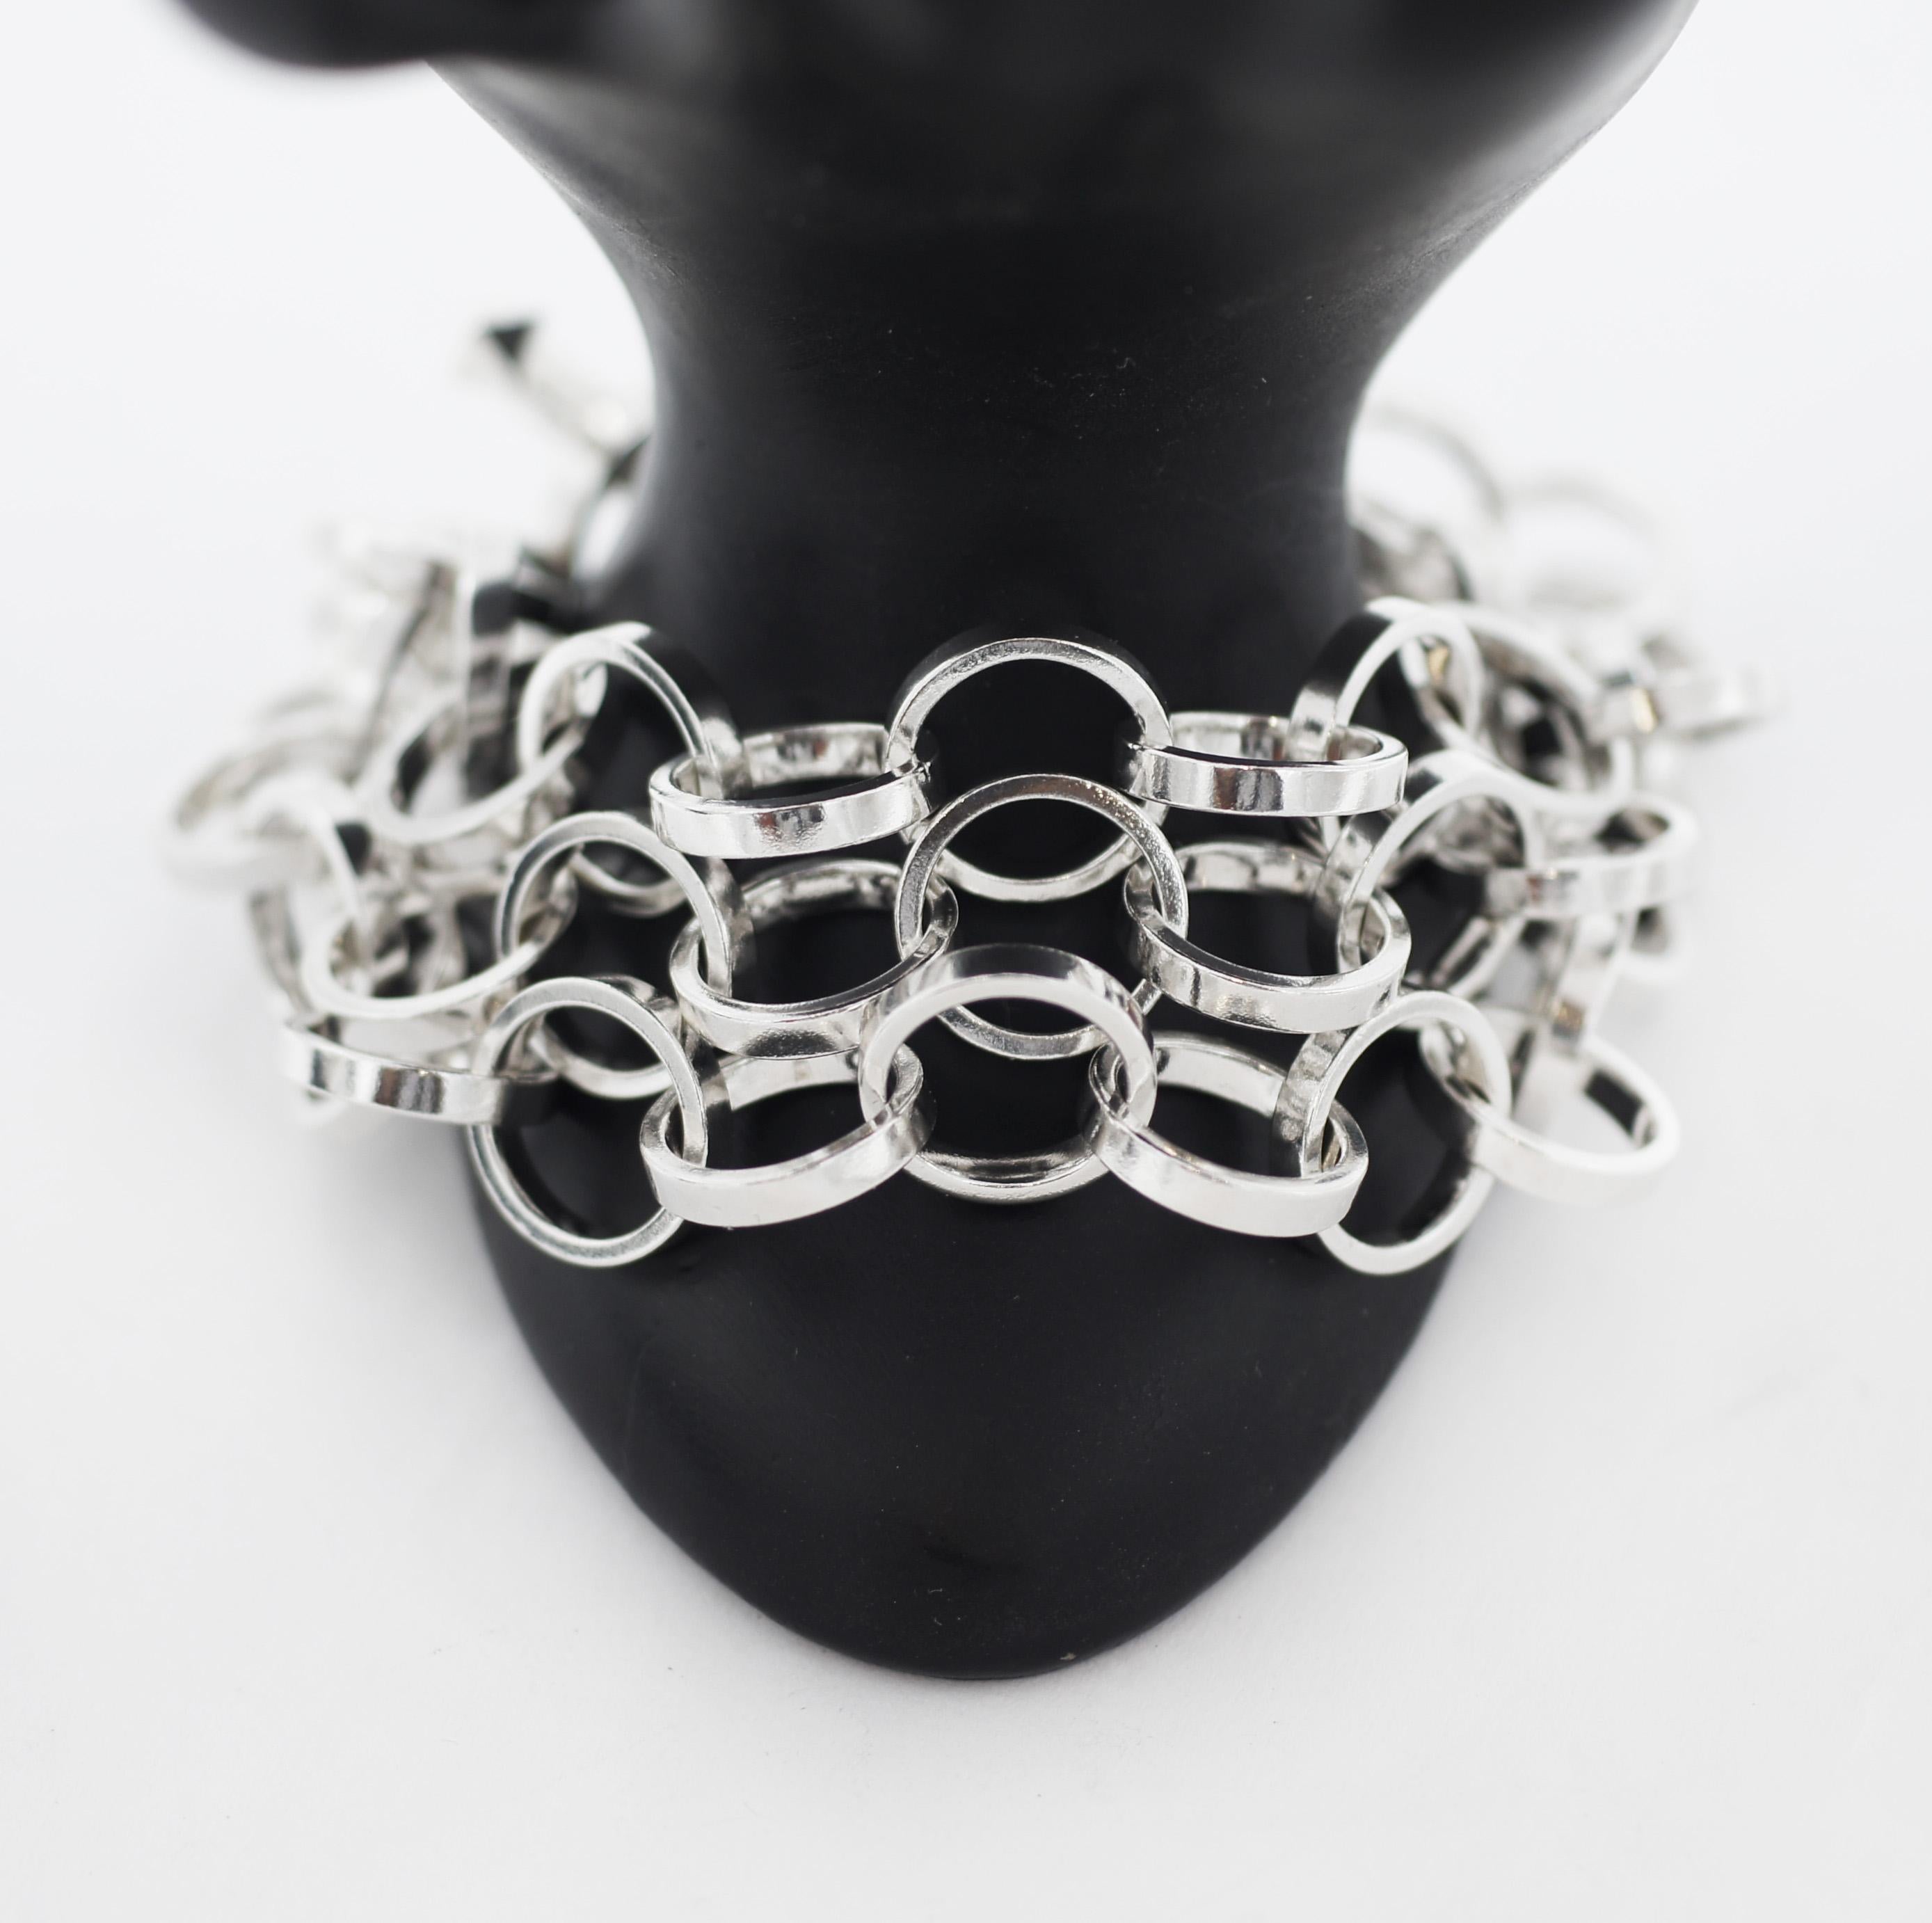 TIFFANY & CO.
Rares et authentiques Paloma Picasso
Bracelet en argent 925
Conçu pour Tiffany & Co.
Ce bracelet est composé de trois chaînes lourdes à maillons circulaires sécurisées par une fermeture à genouillère rectangulaire.
Estampillé par le